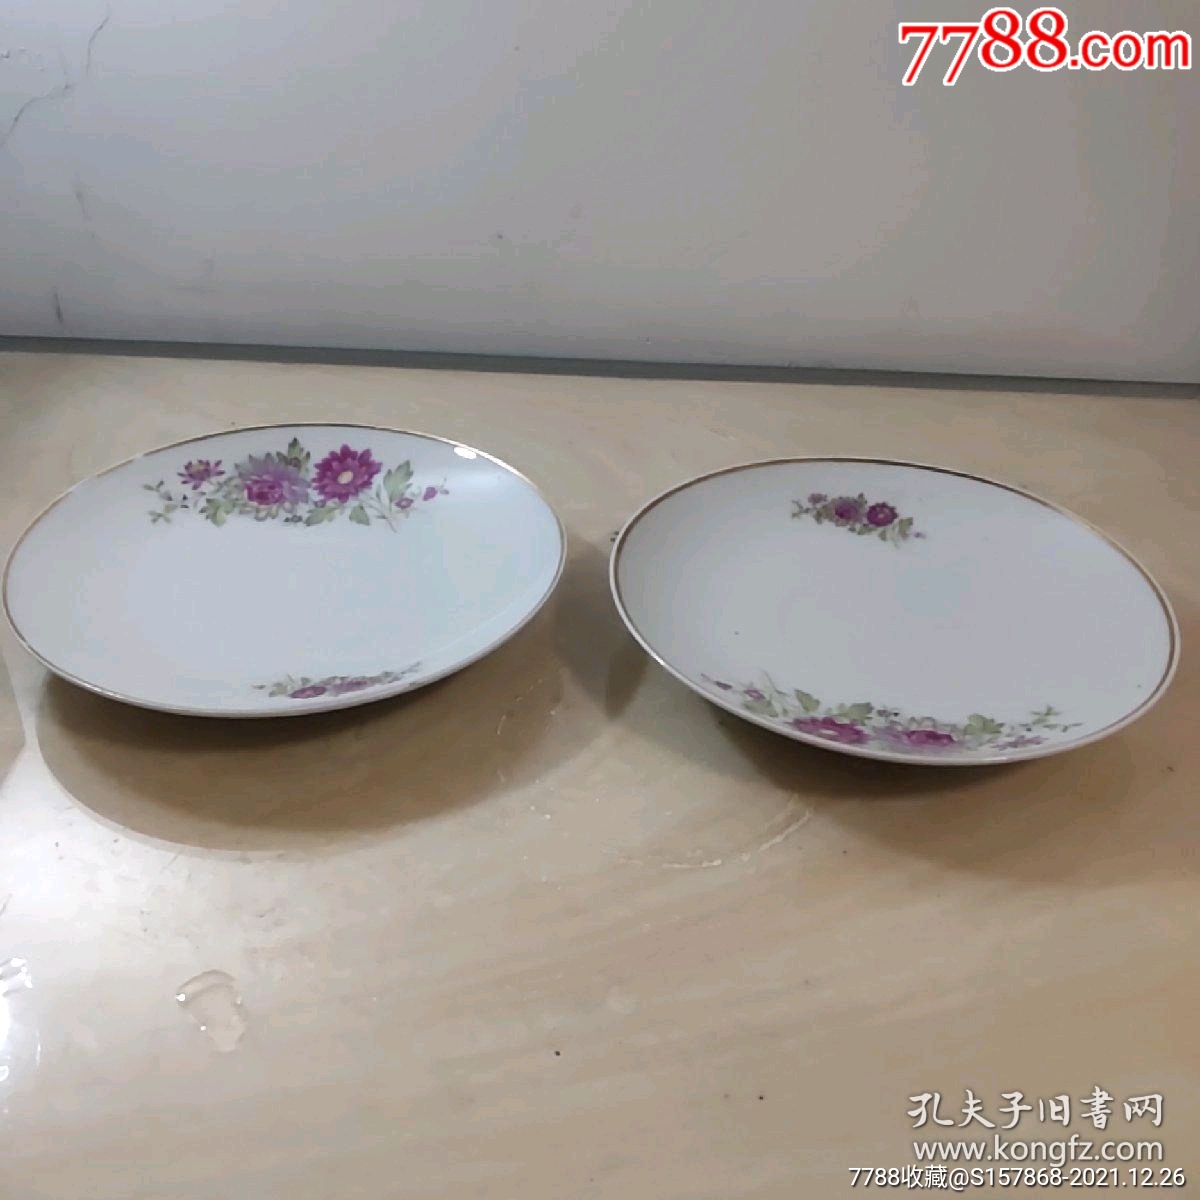 中国制造盘子-价格:30元-se84549479-彩绘瓷/彩瓷-零售-7788收藏